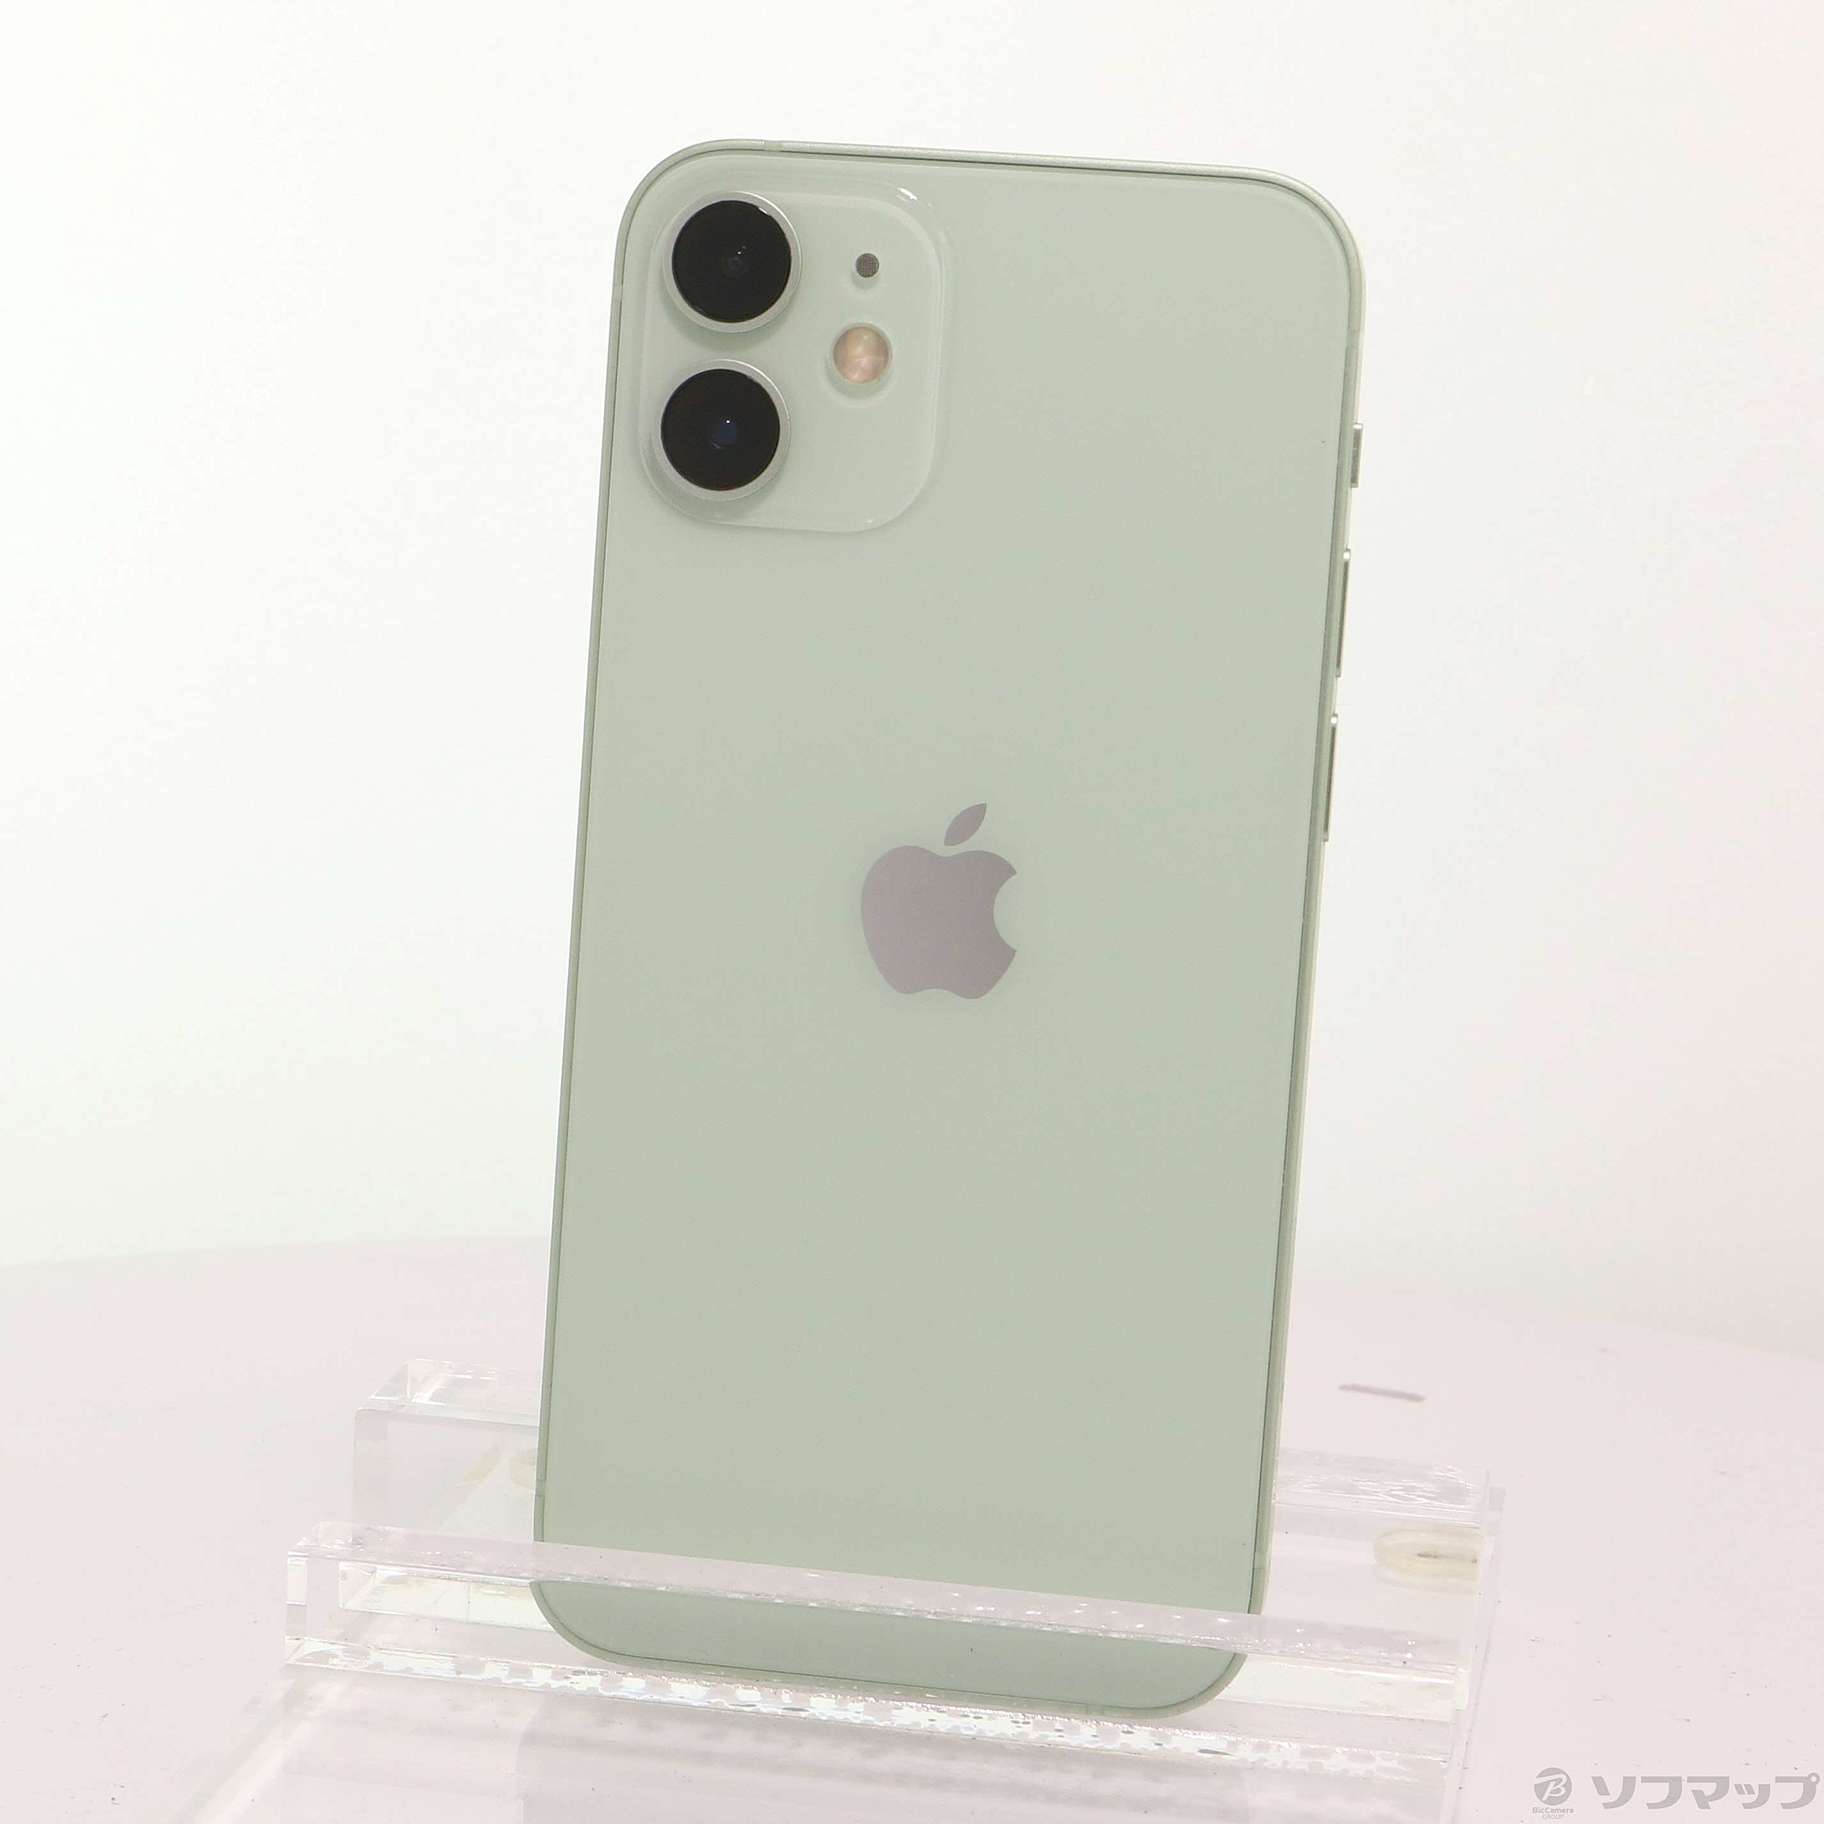 iPhone12 mini グリーン 128gb simフリースマートフォン/携帯電話 